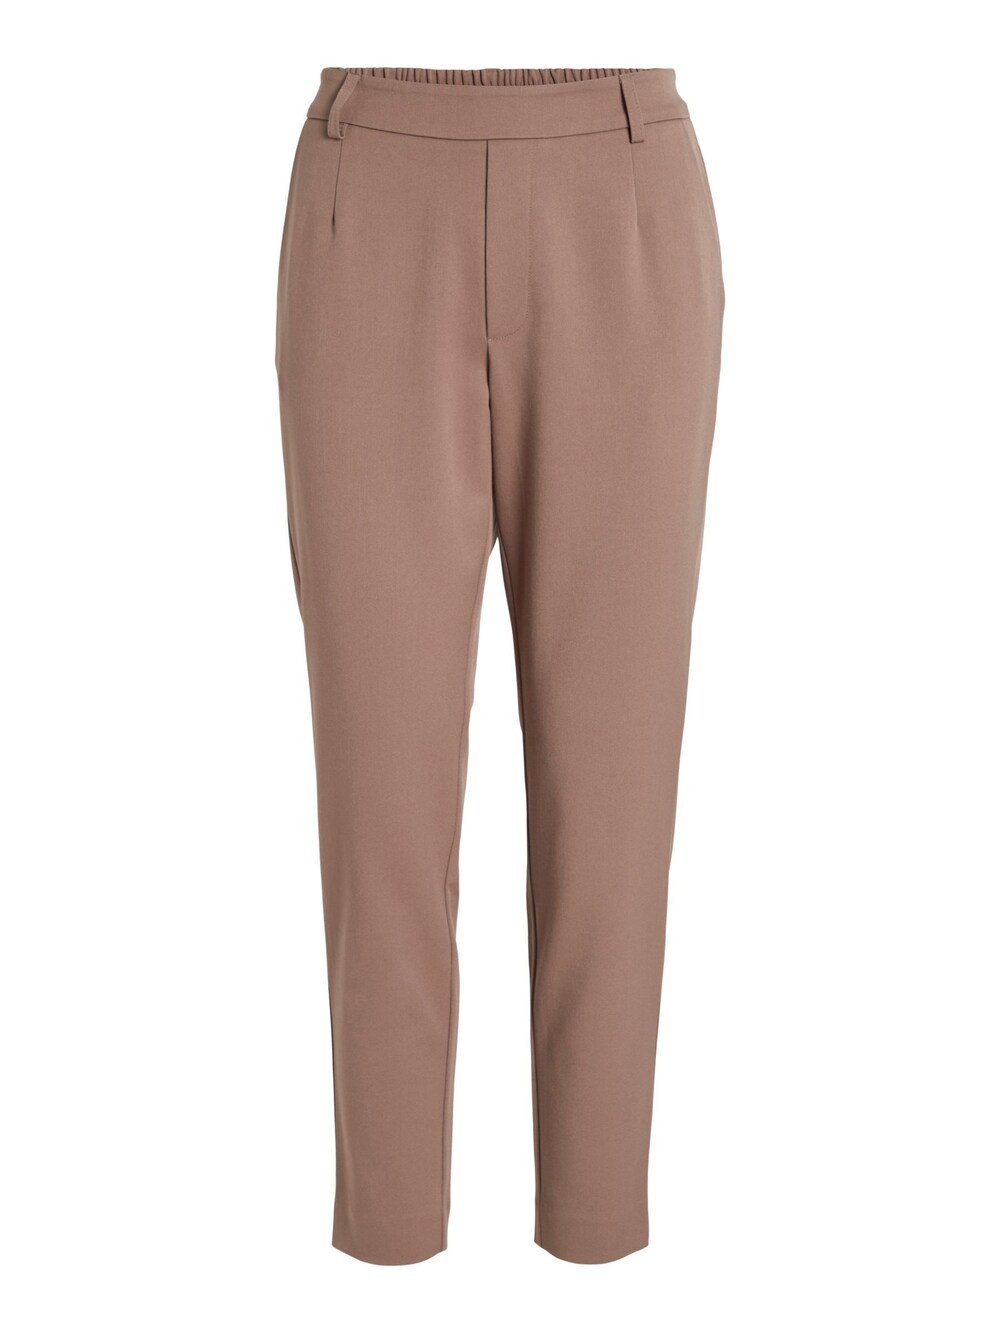 Узкие брюки со складками спереди VILA Varone, коричневый узкие брюки со складками спереди fransa curve stretch коричневый